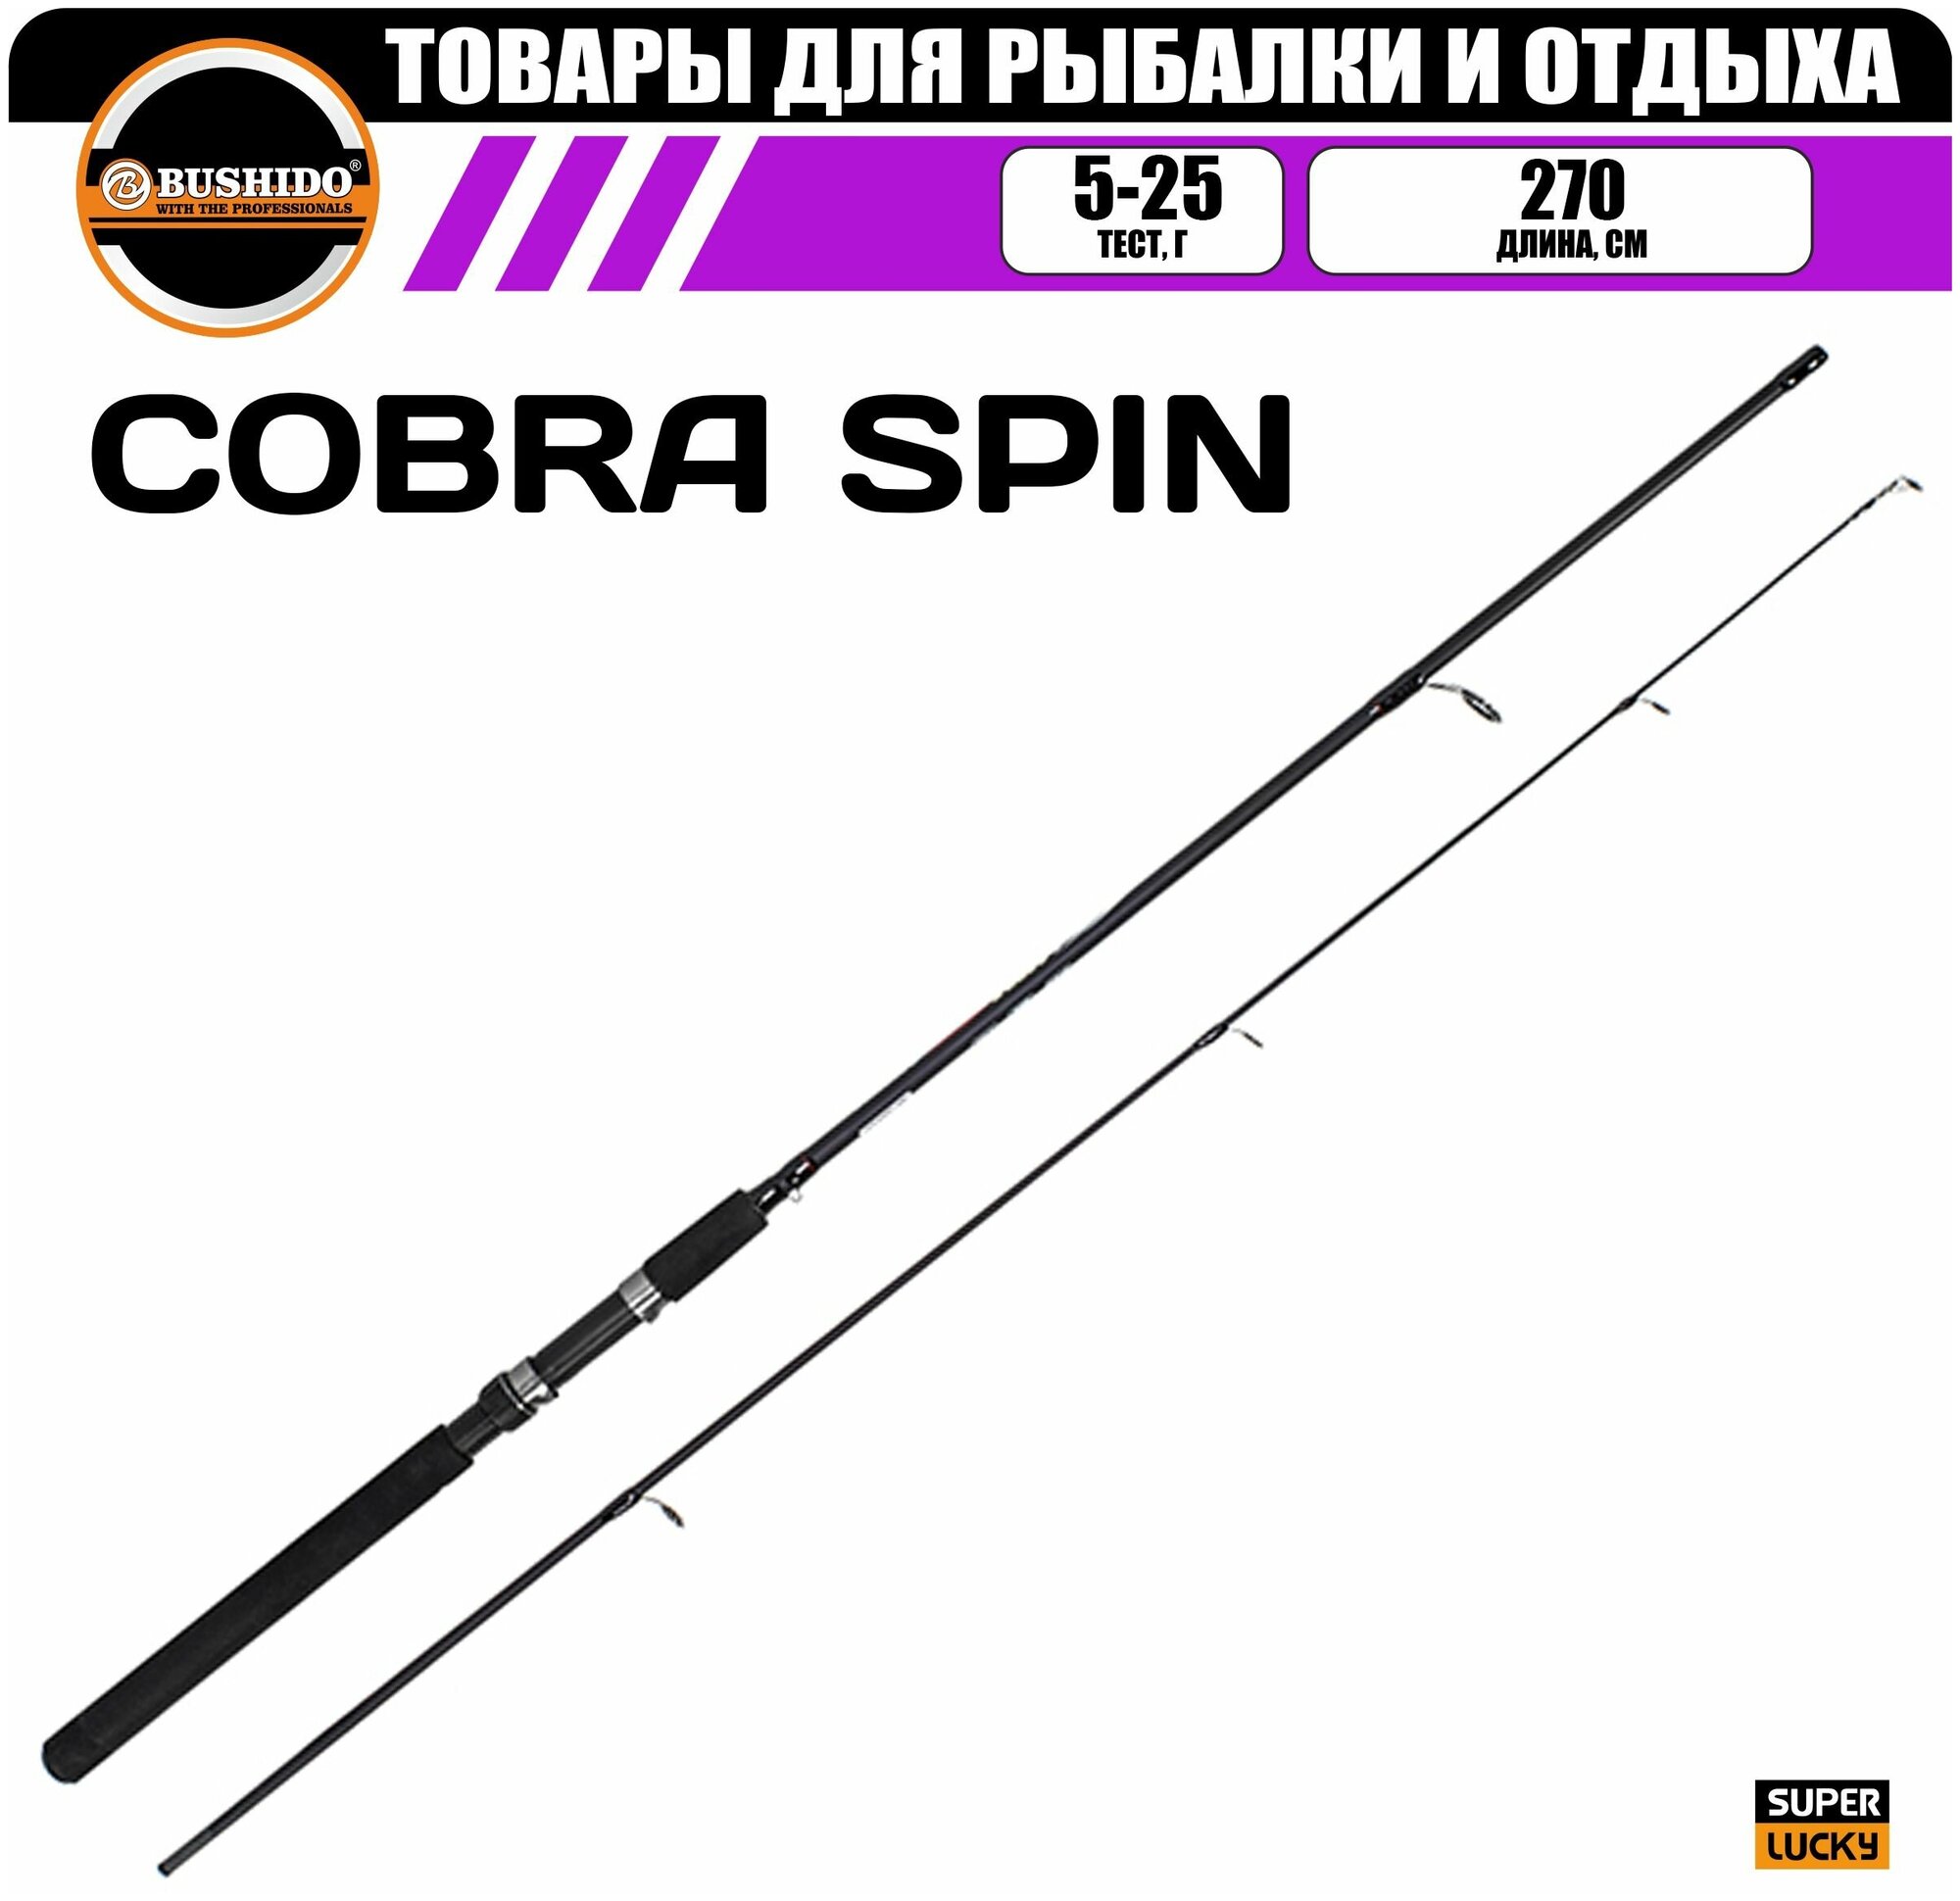 Спиннинг рыболовный BUSHIDO COBRA 2.70м (5-25гр), штекерная конструкция, медленный строй, полая (tubular tip) вершинка